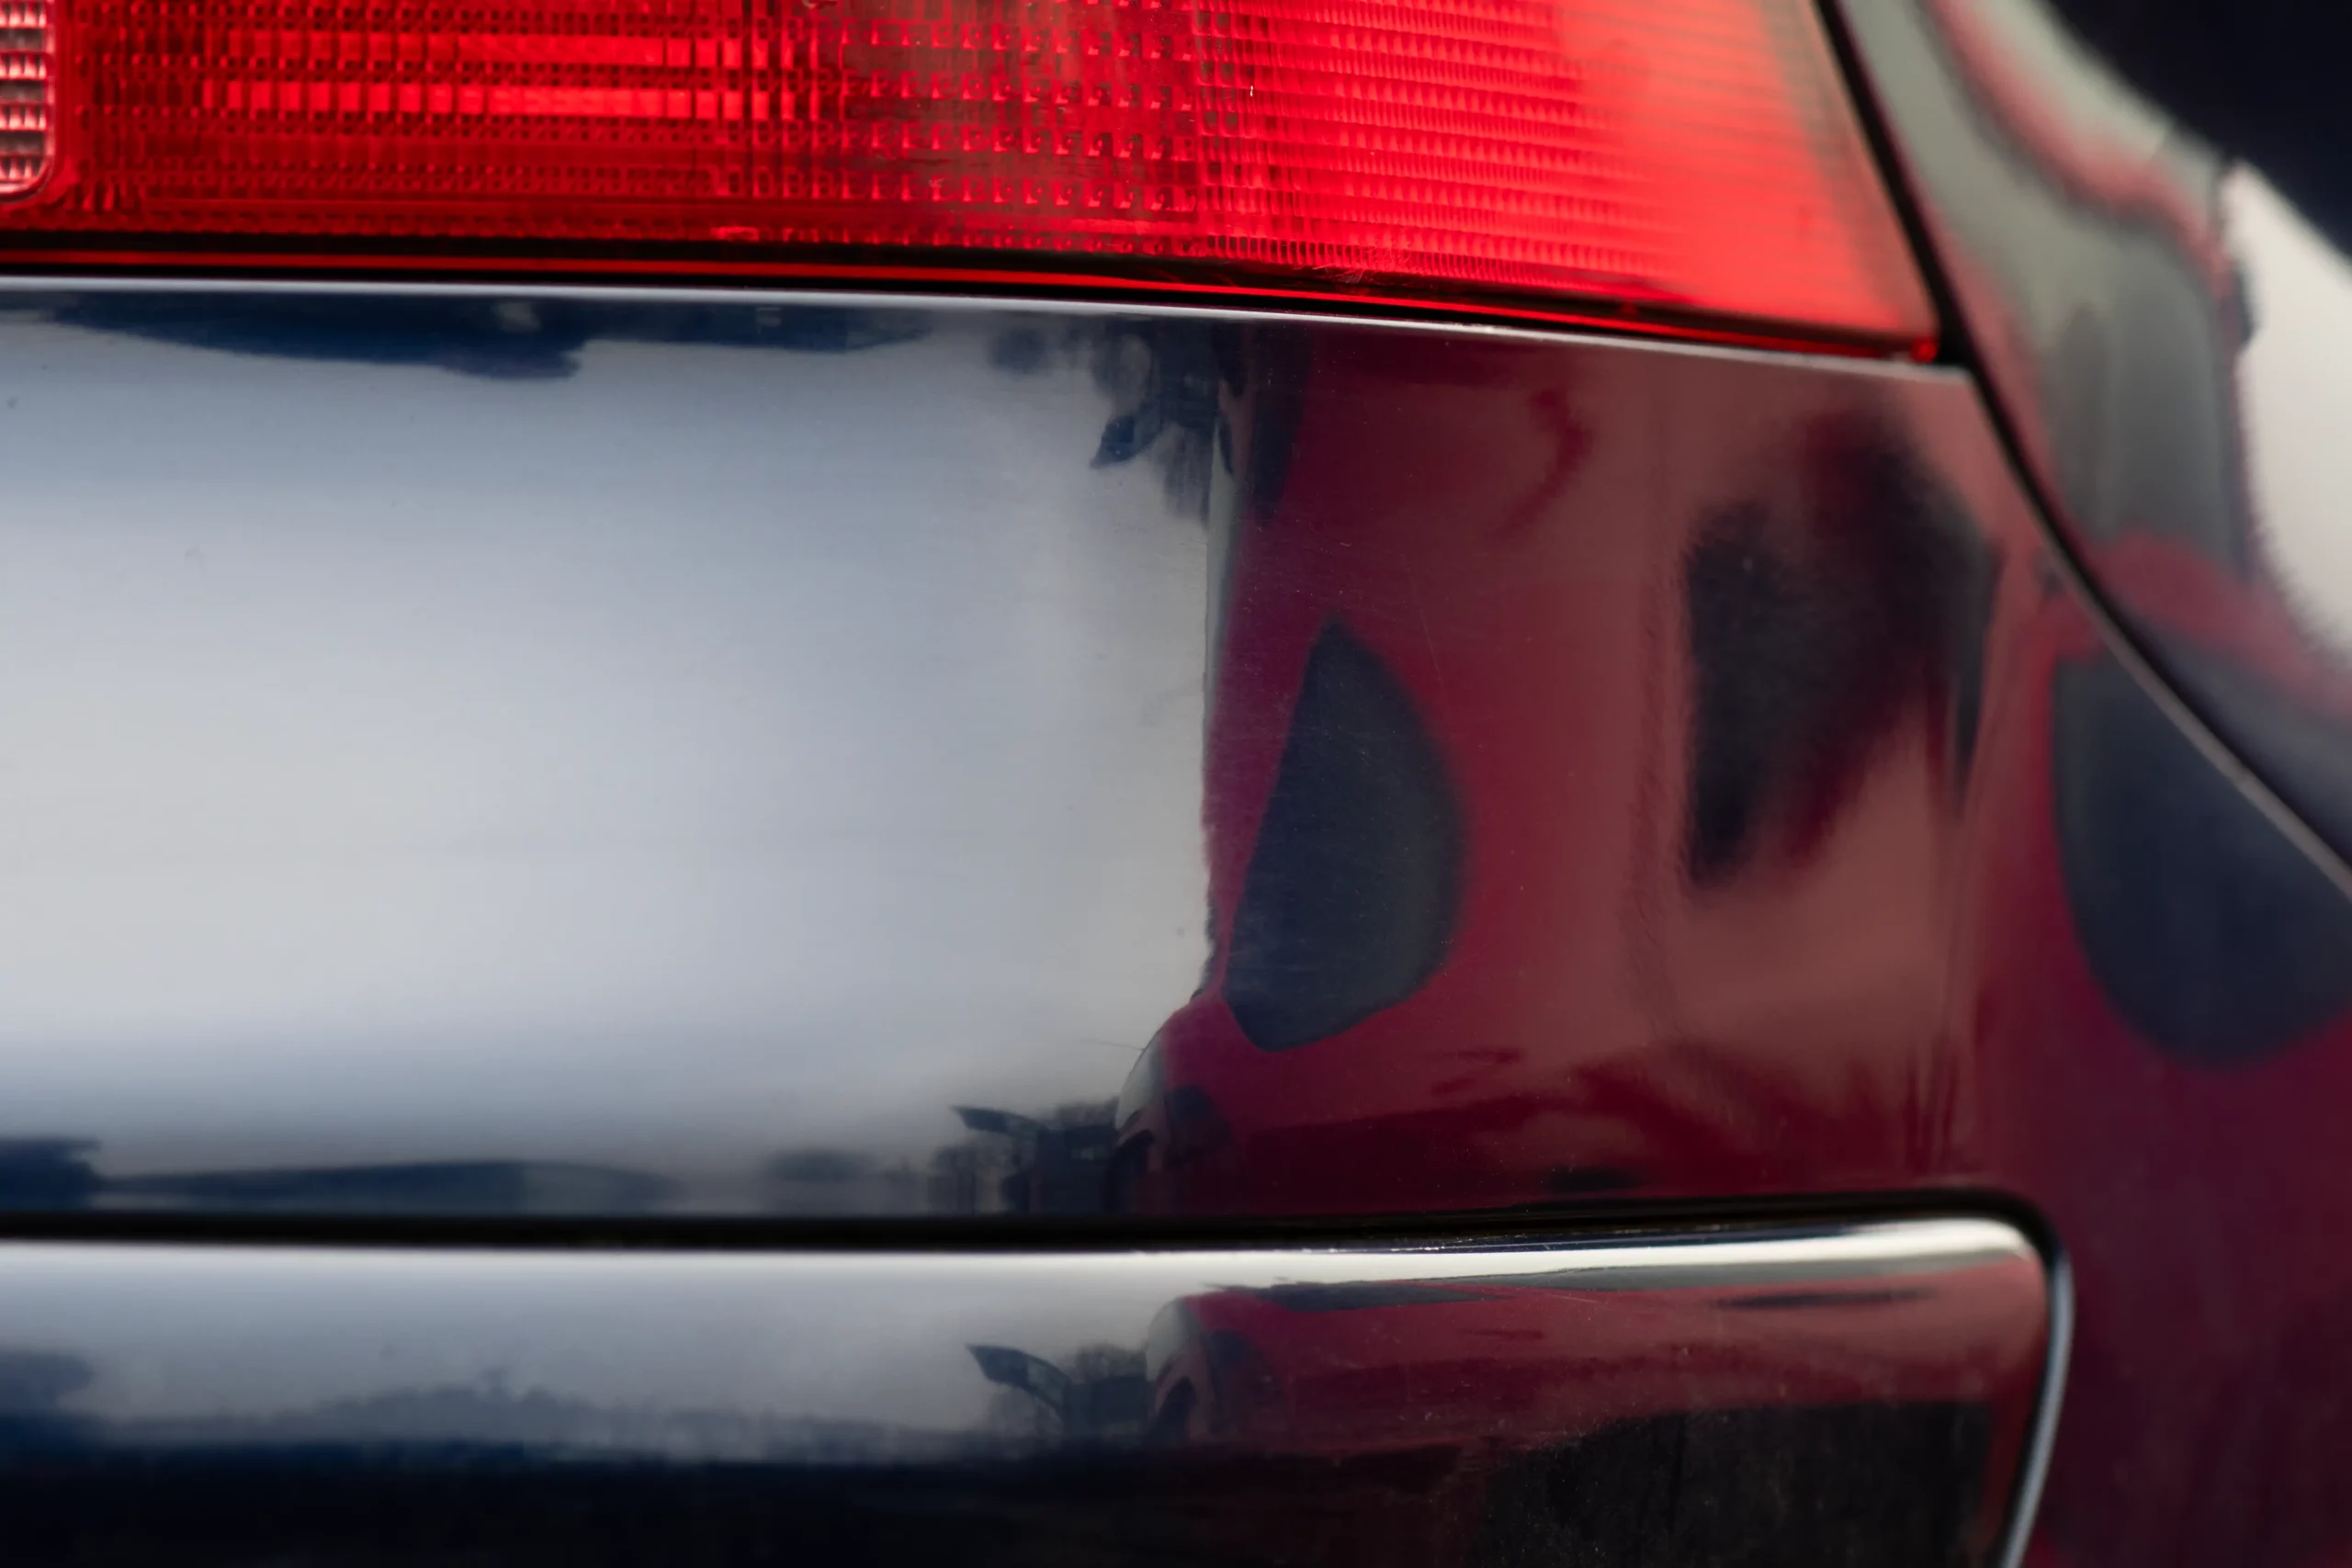 Efterbillede af en lakreparation på bagkofangeren af en mørkeblå bil.